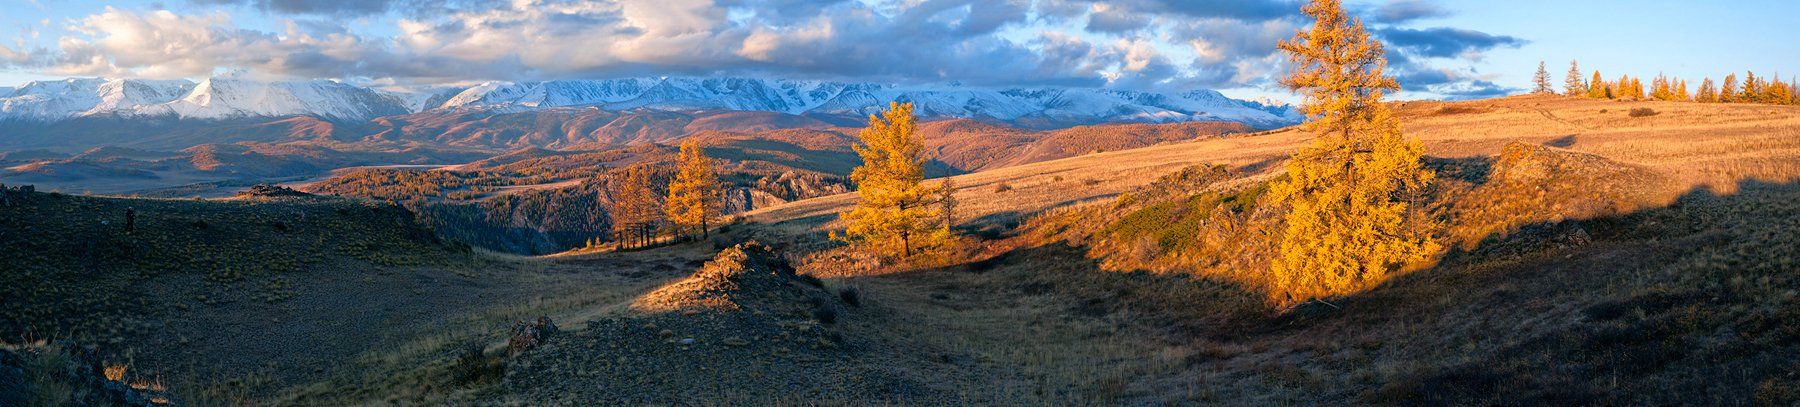 горы, лиственницы, утро, курай, северо-чуйский хребет, горный алтай, республика алтай, Валерий Пешков